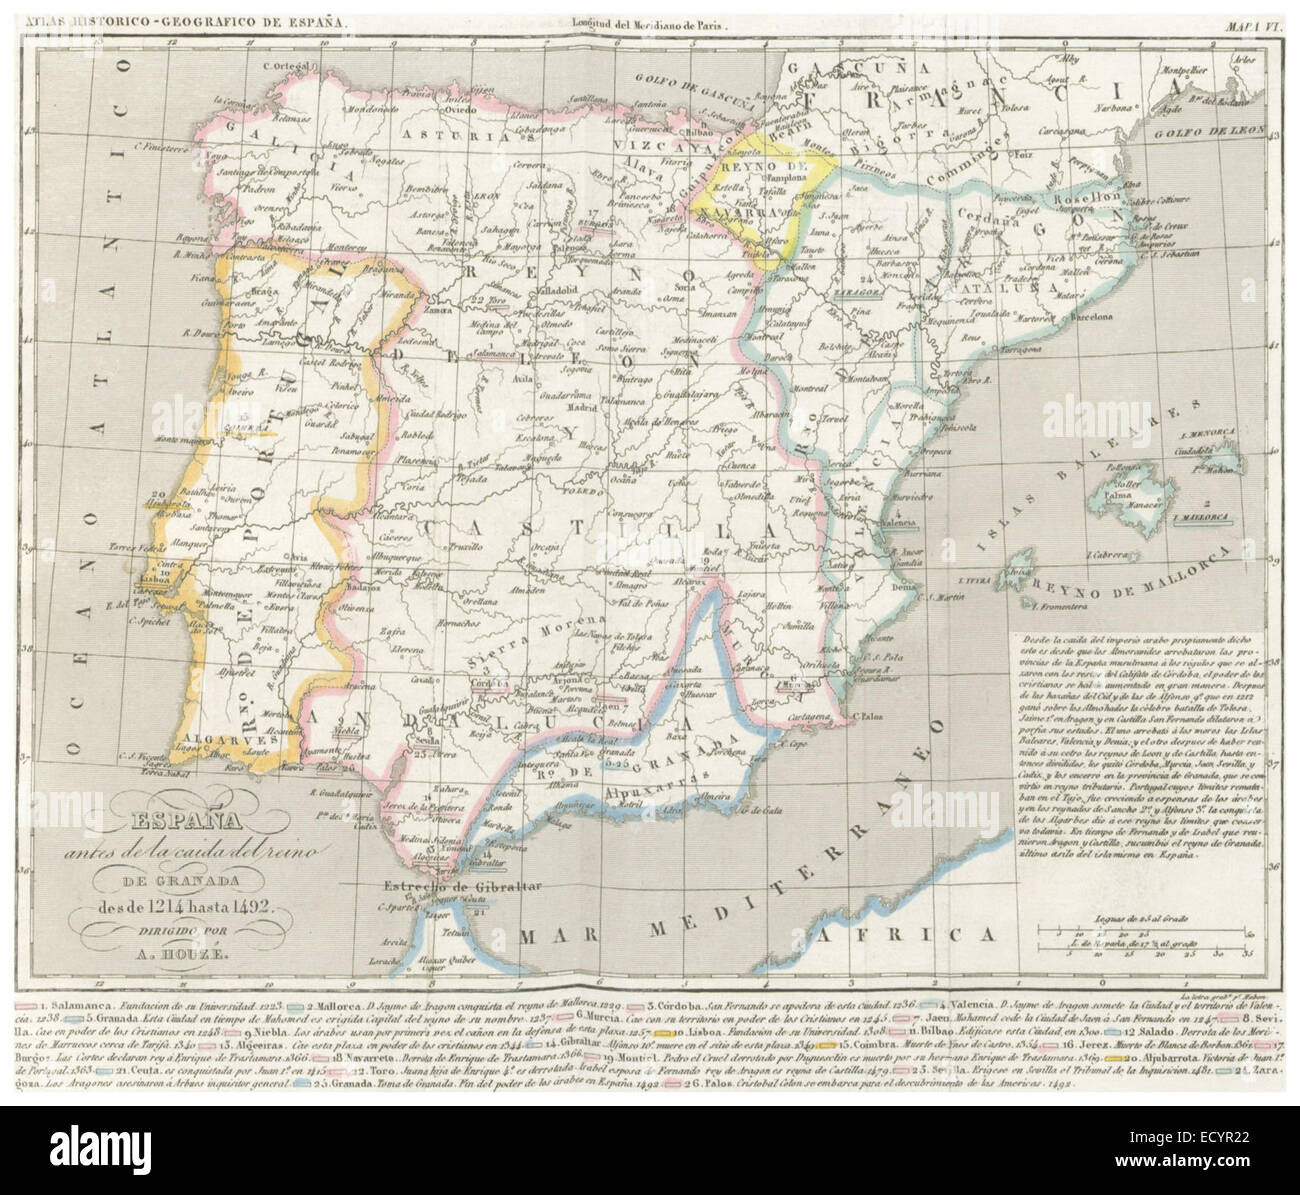 CHAO(1849) Atlas Historico Geografico de España - Mapa 6 (1214-1492) Stock Photo